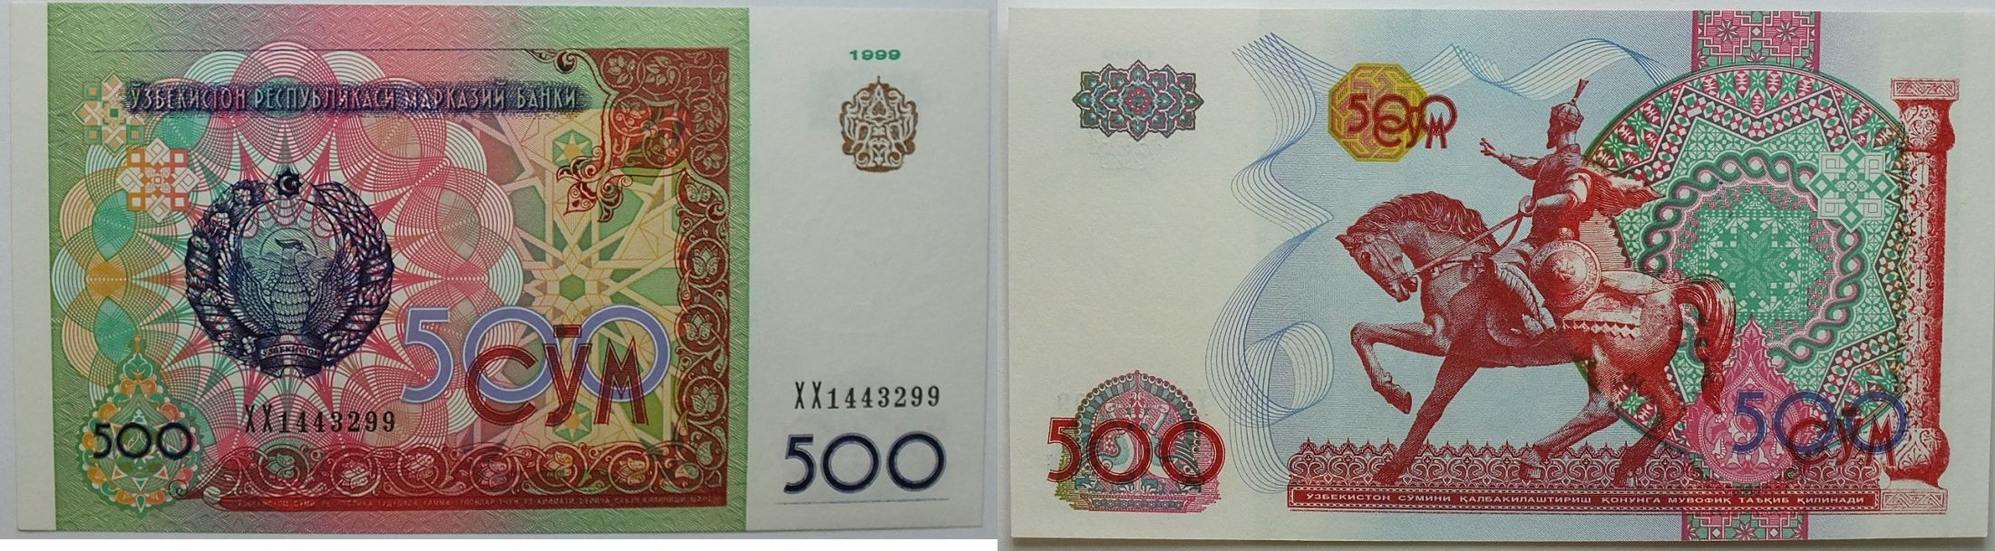 Киргизский сум. Узбекский тенге. Сум Узбекистан. Таджикские сомы. Банкноты Узбекистана.